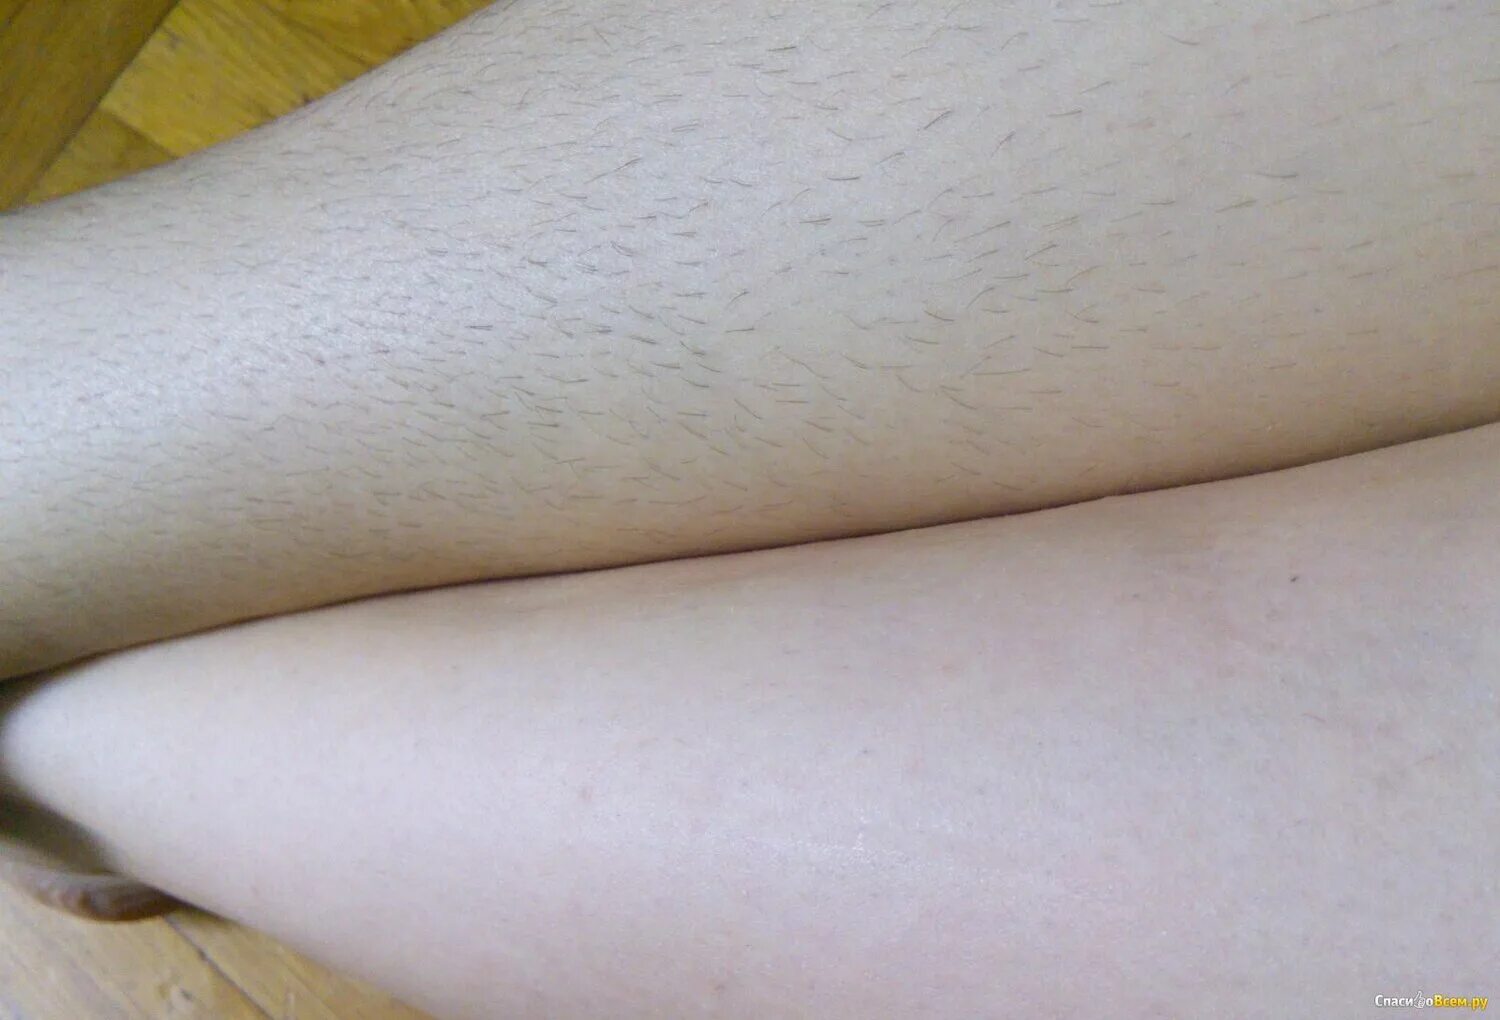 Светлые волосы на ногах. Голени до и после шугаринга.